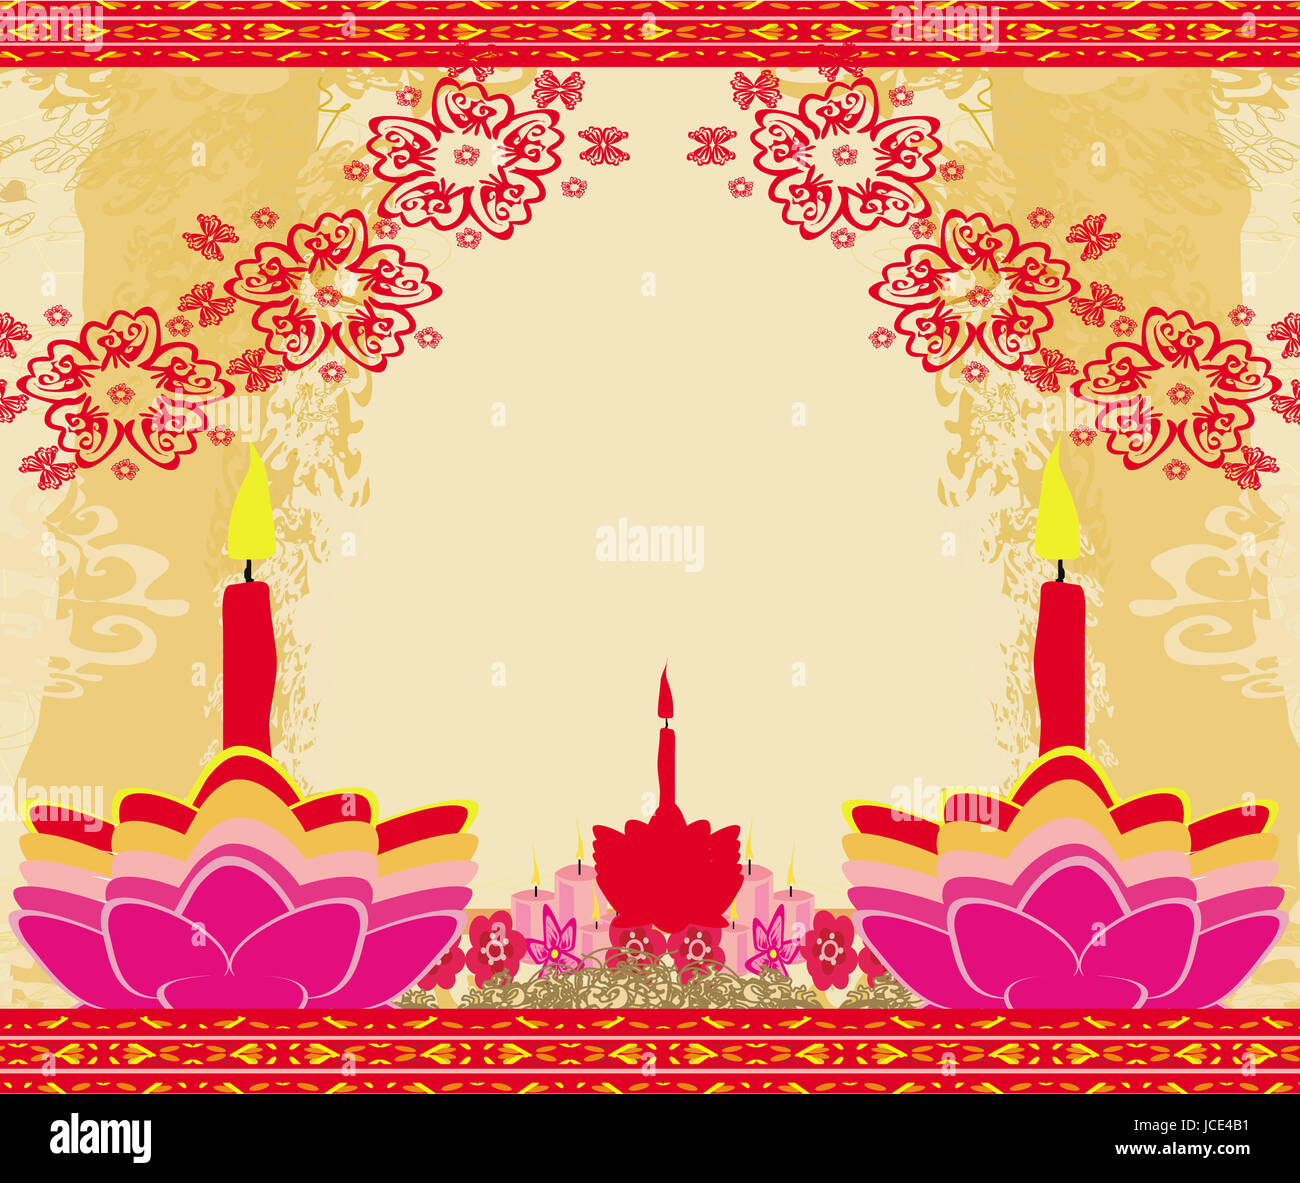 Happy Diwali background with decorative frame Stock Photo - Alamy